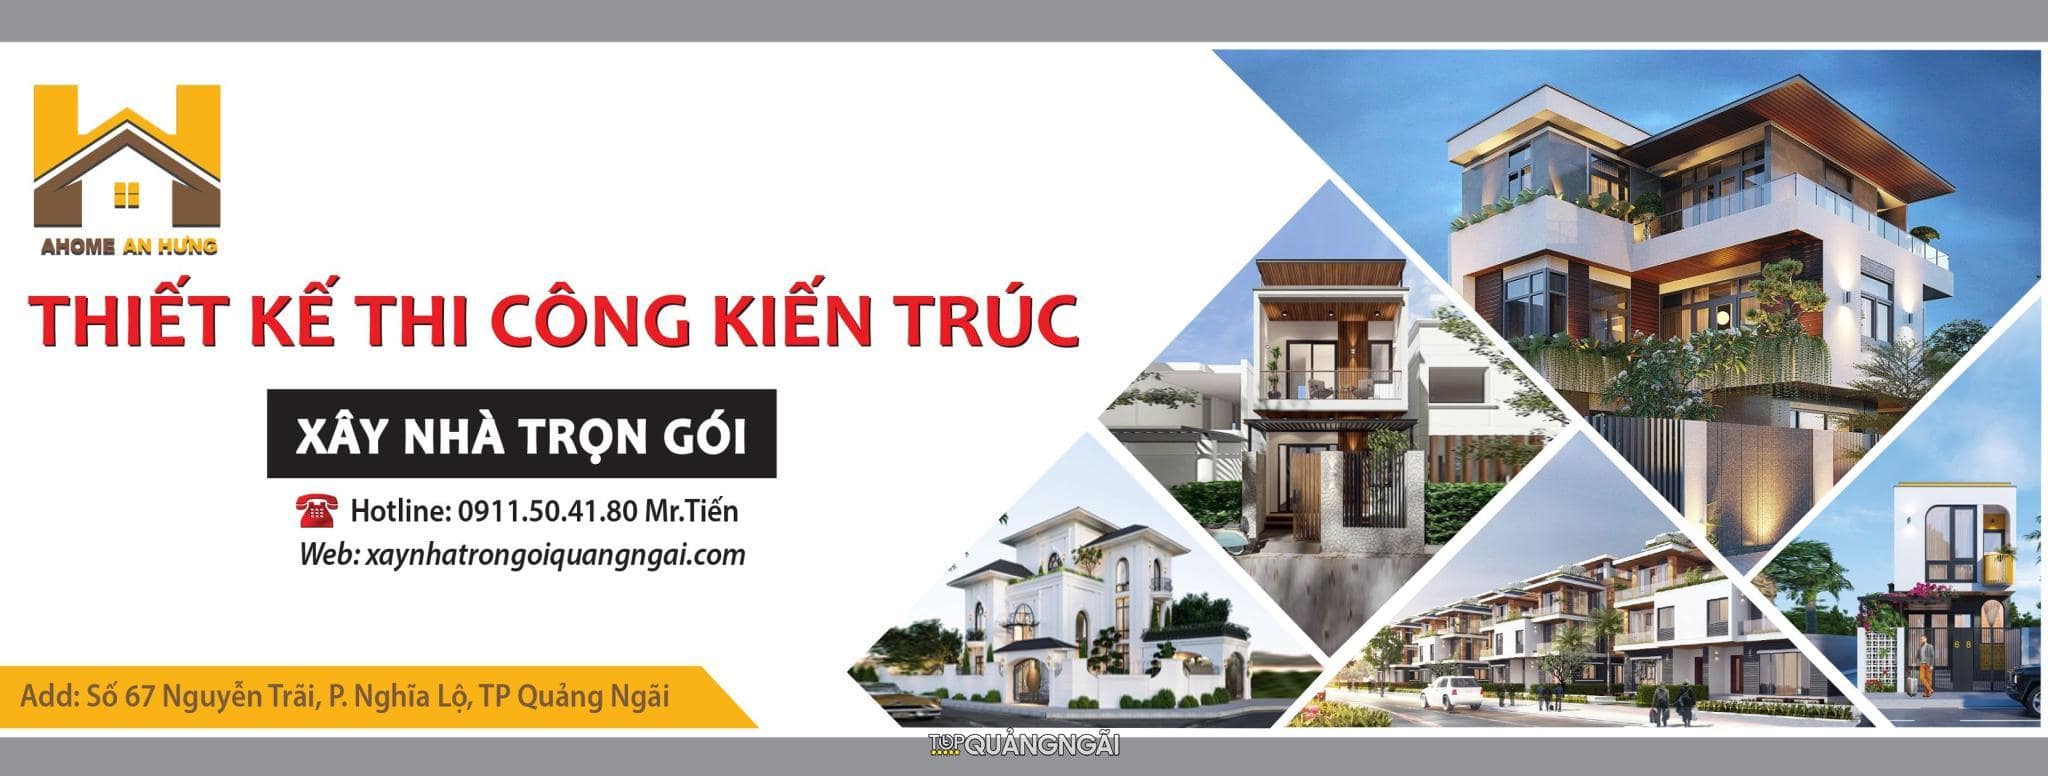 Top 7 Công ty xây nhà trọn gói Quảng Ngãi uy tín